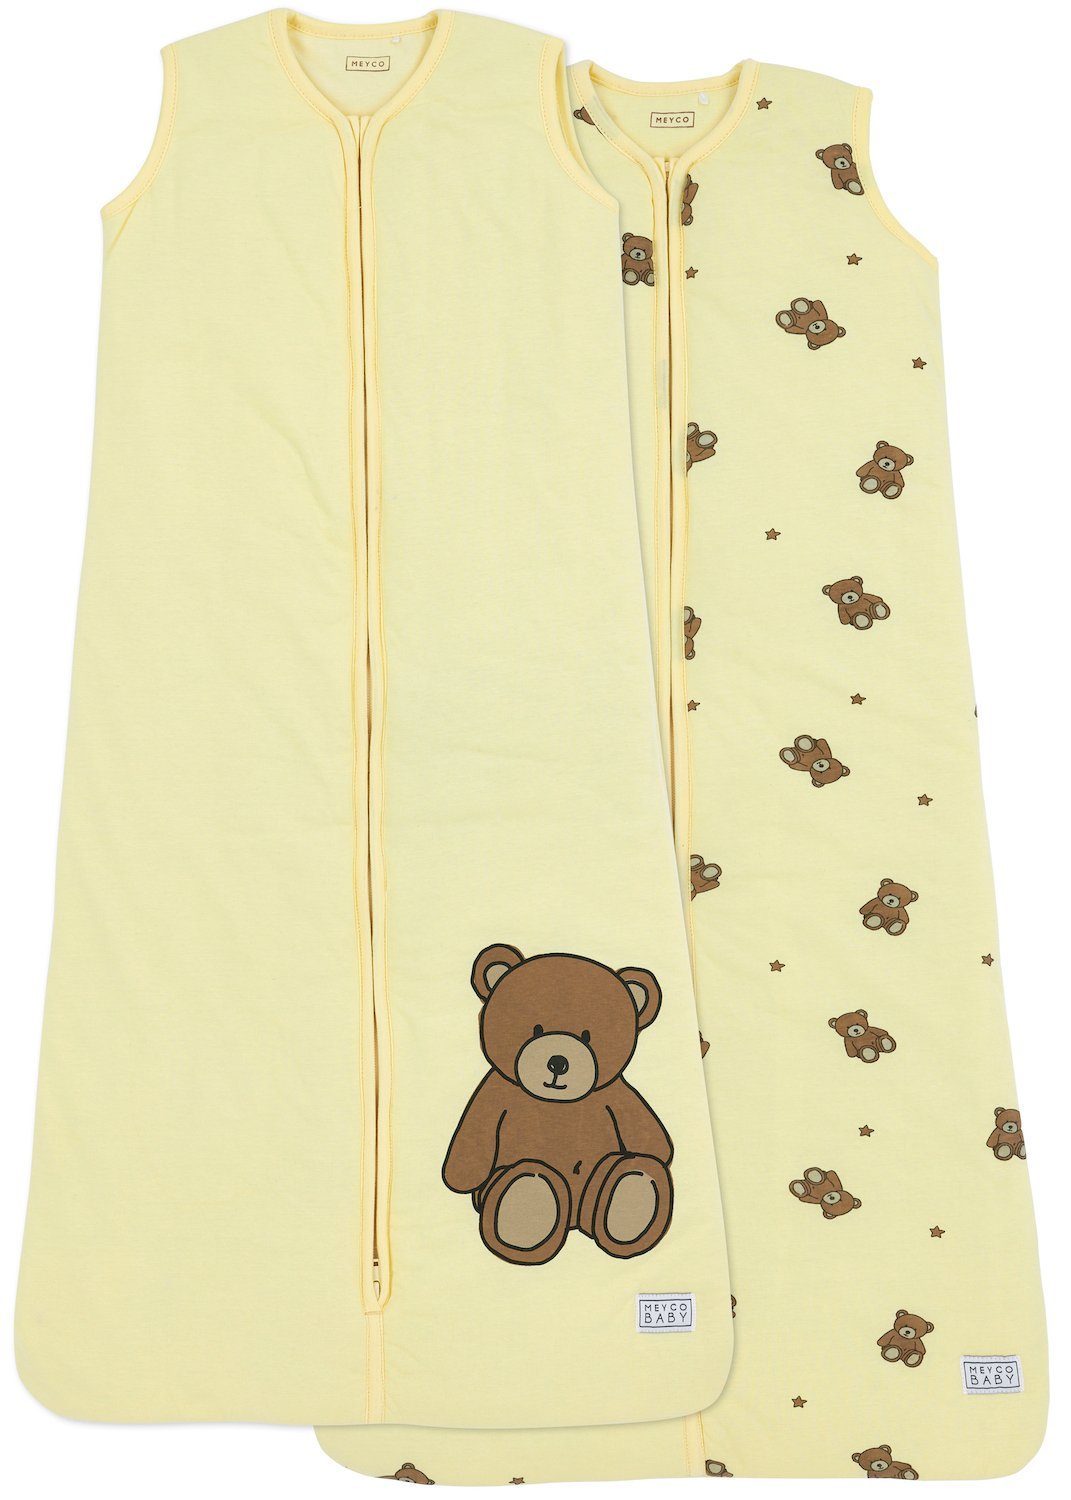 Meyco Baby Babyschlafsack Teddy Bear Yellow 70cm (2 tlg), Soft